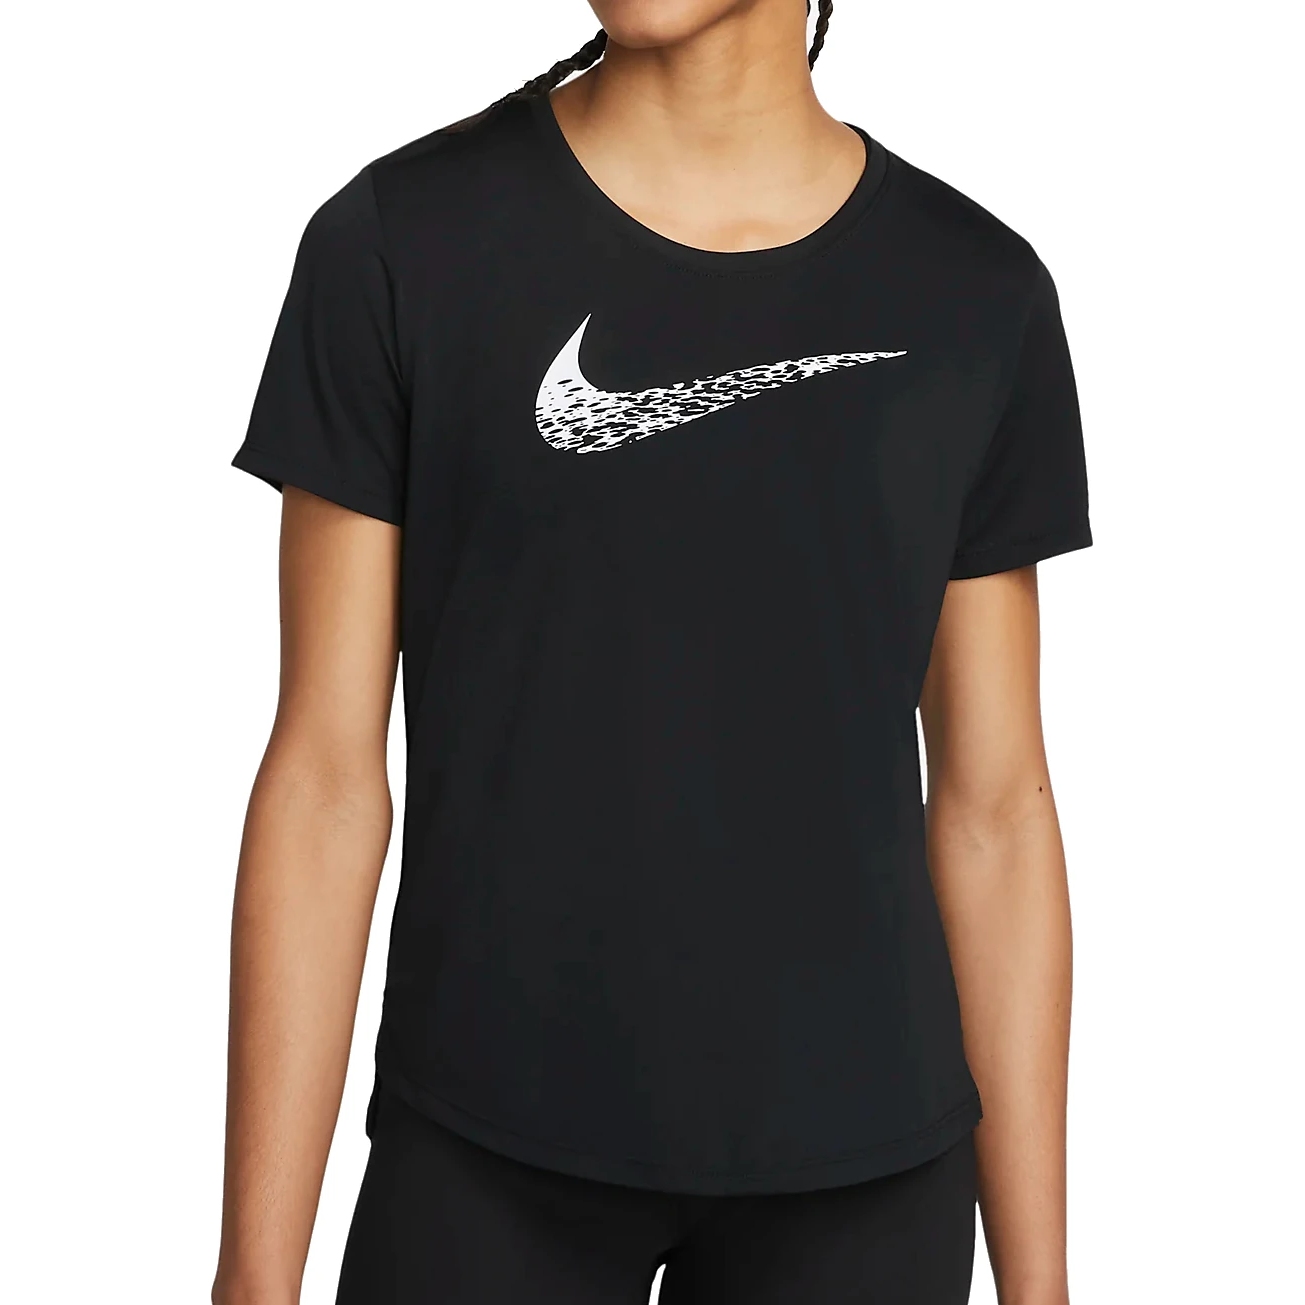 Produktbild von Nike Swoosh Run Kurzarm-Laufoberteil für Damen - black/white DM7777-010